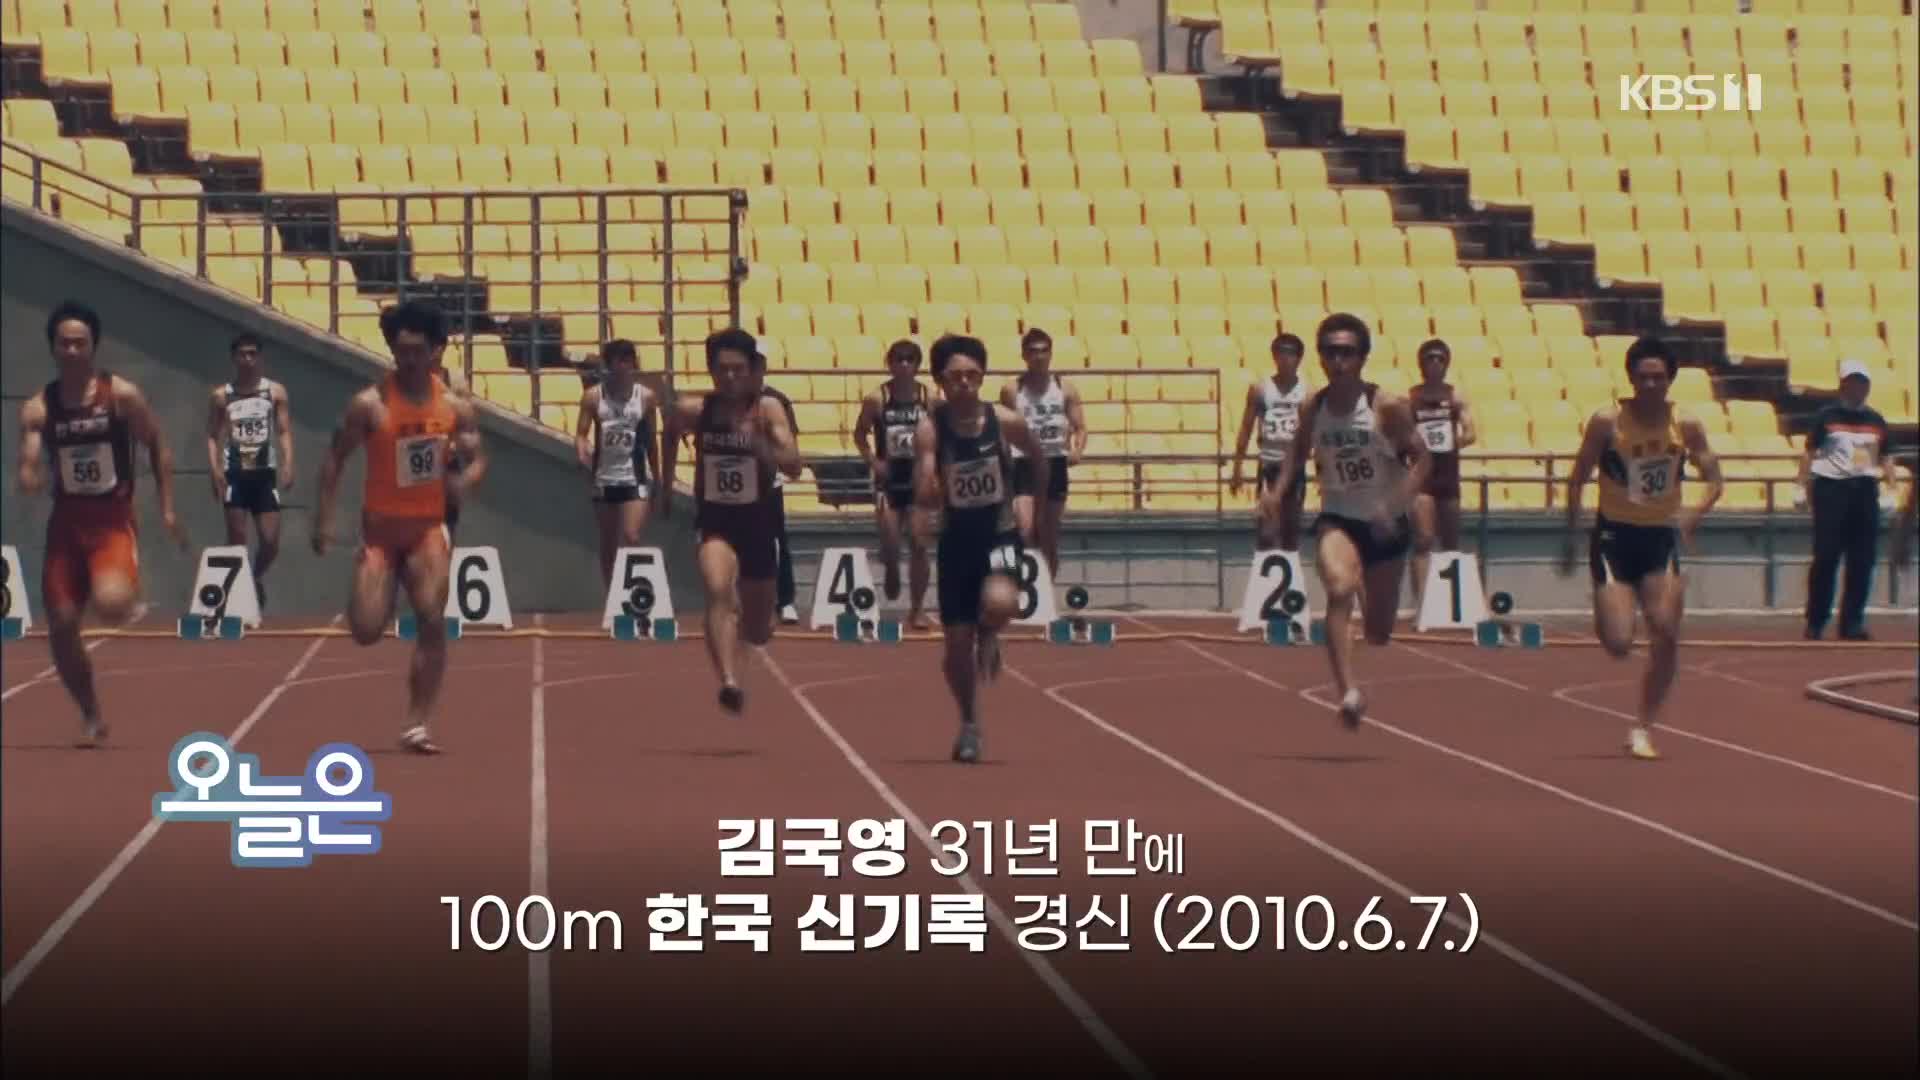 [오늘은] 김국영 31년 만에 100m 한국 신기록 경신 (2010.6.7.)